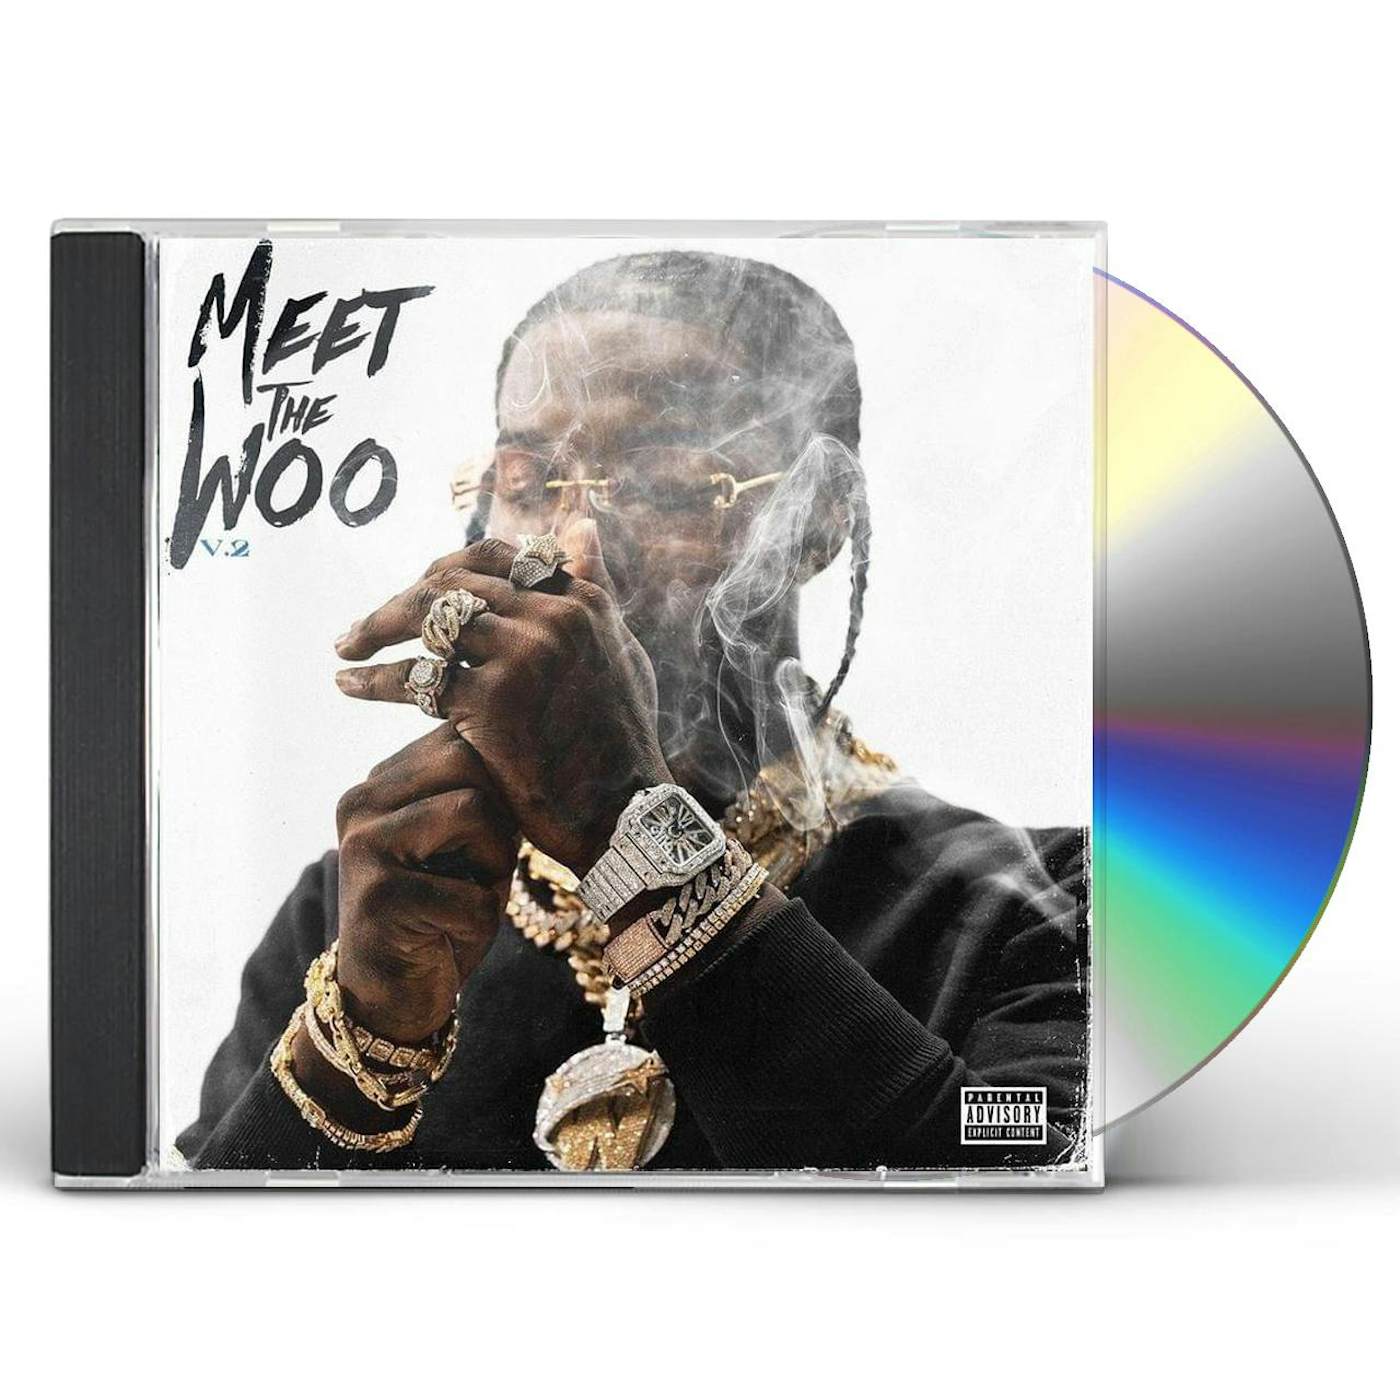 Pop Smoke MEET THE WOO 2 CD